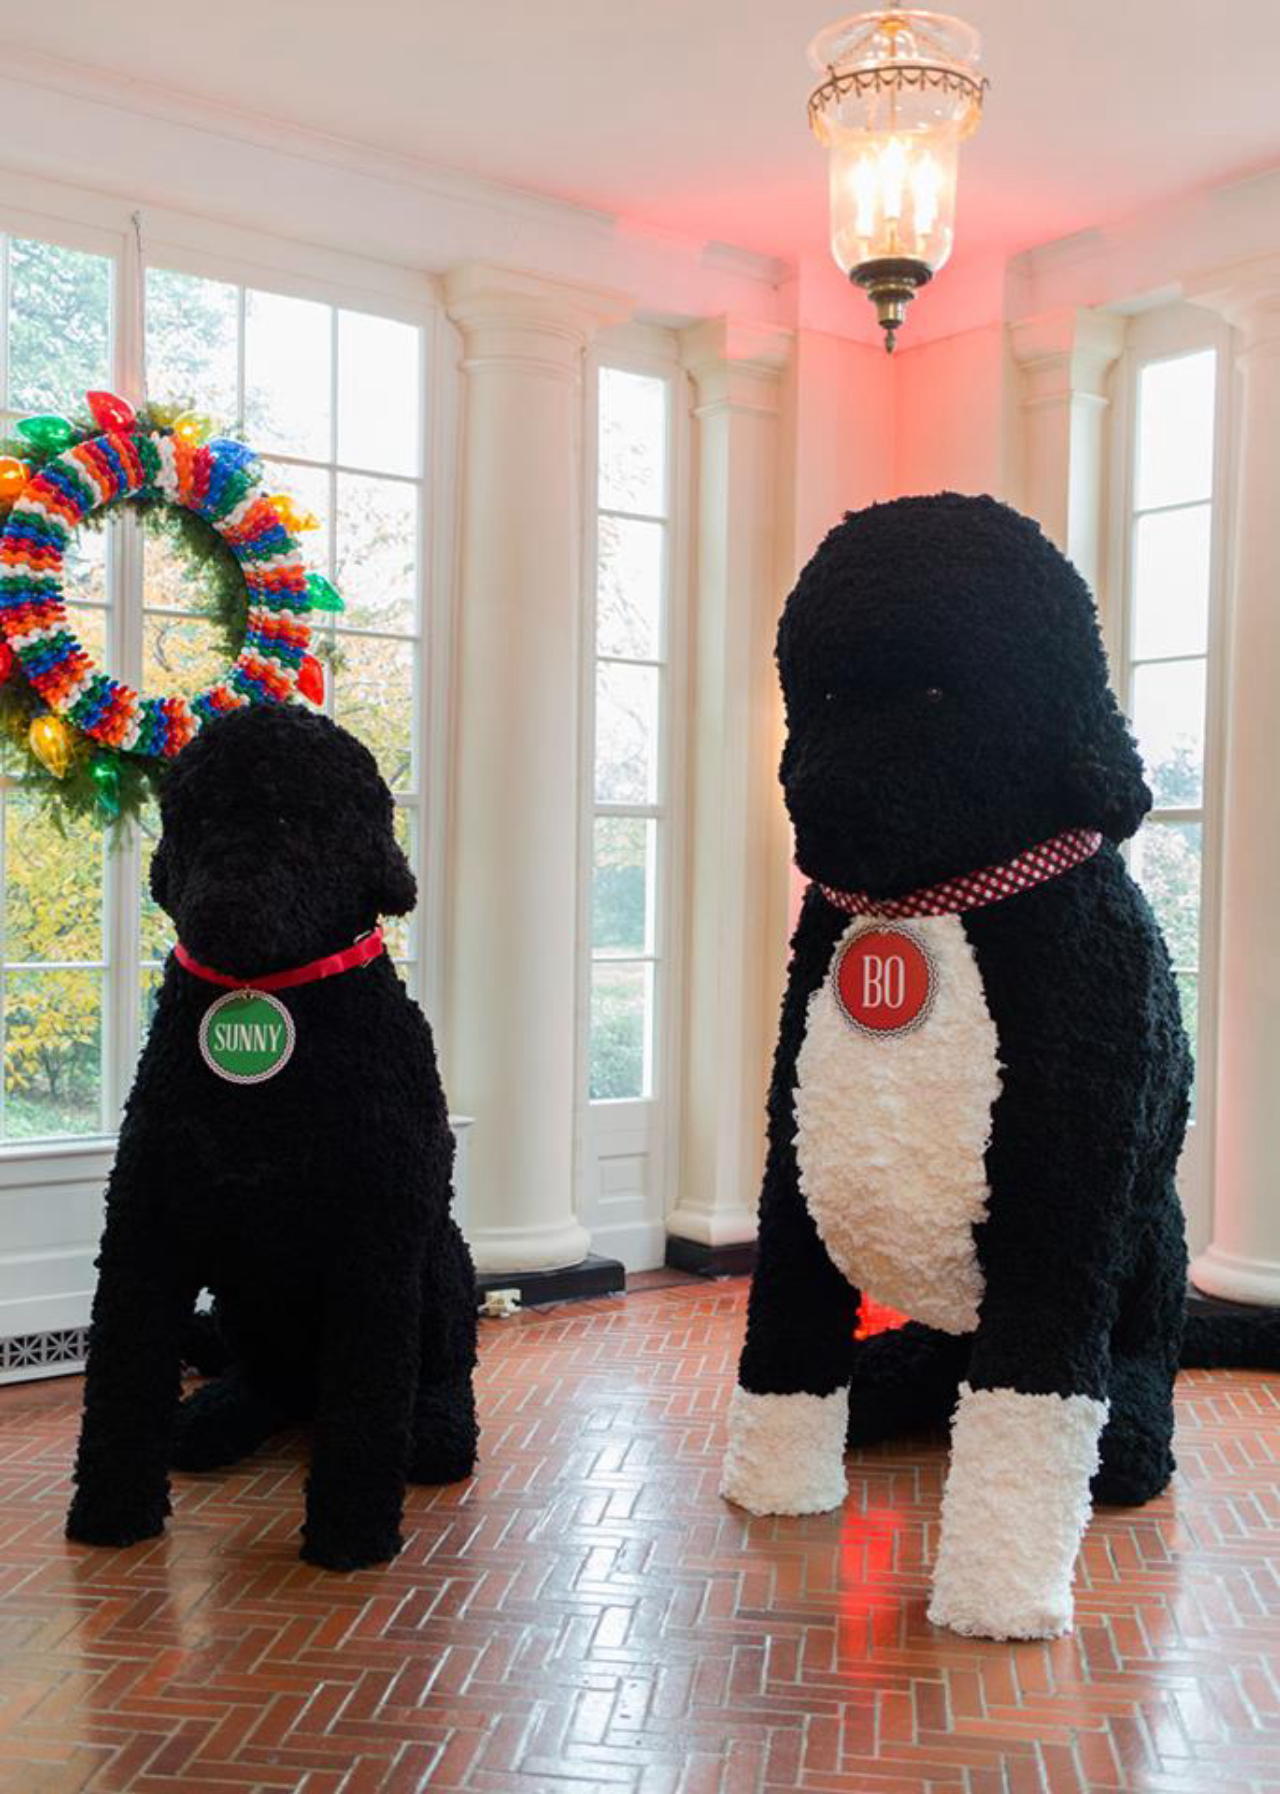 Bo e Sunny, os cães que residem com a família Obama, durante a celebração do Natal (Foto: Reprodução Facebook The White House) 